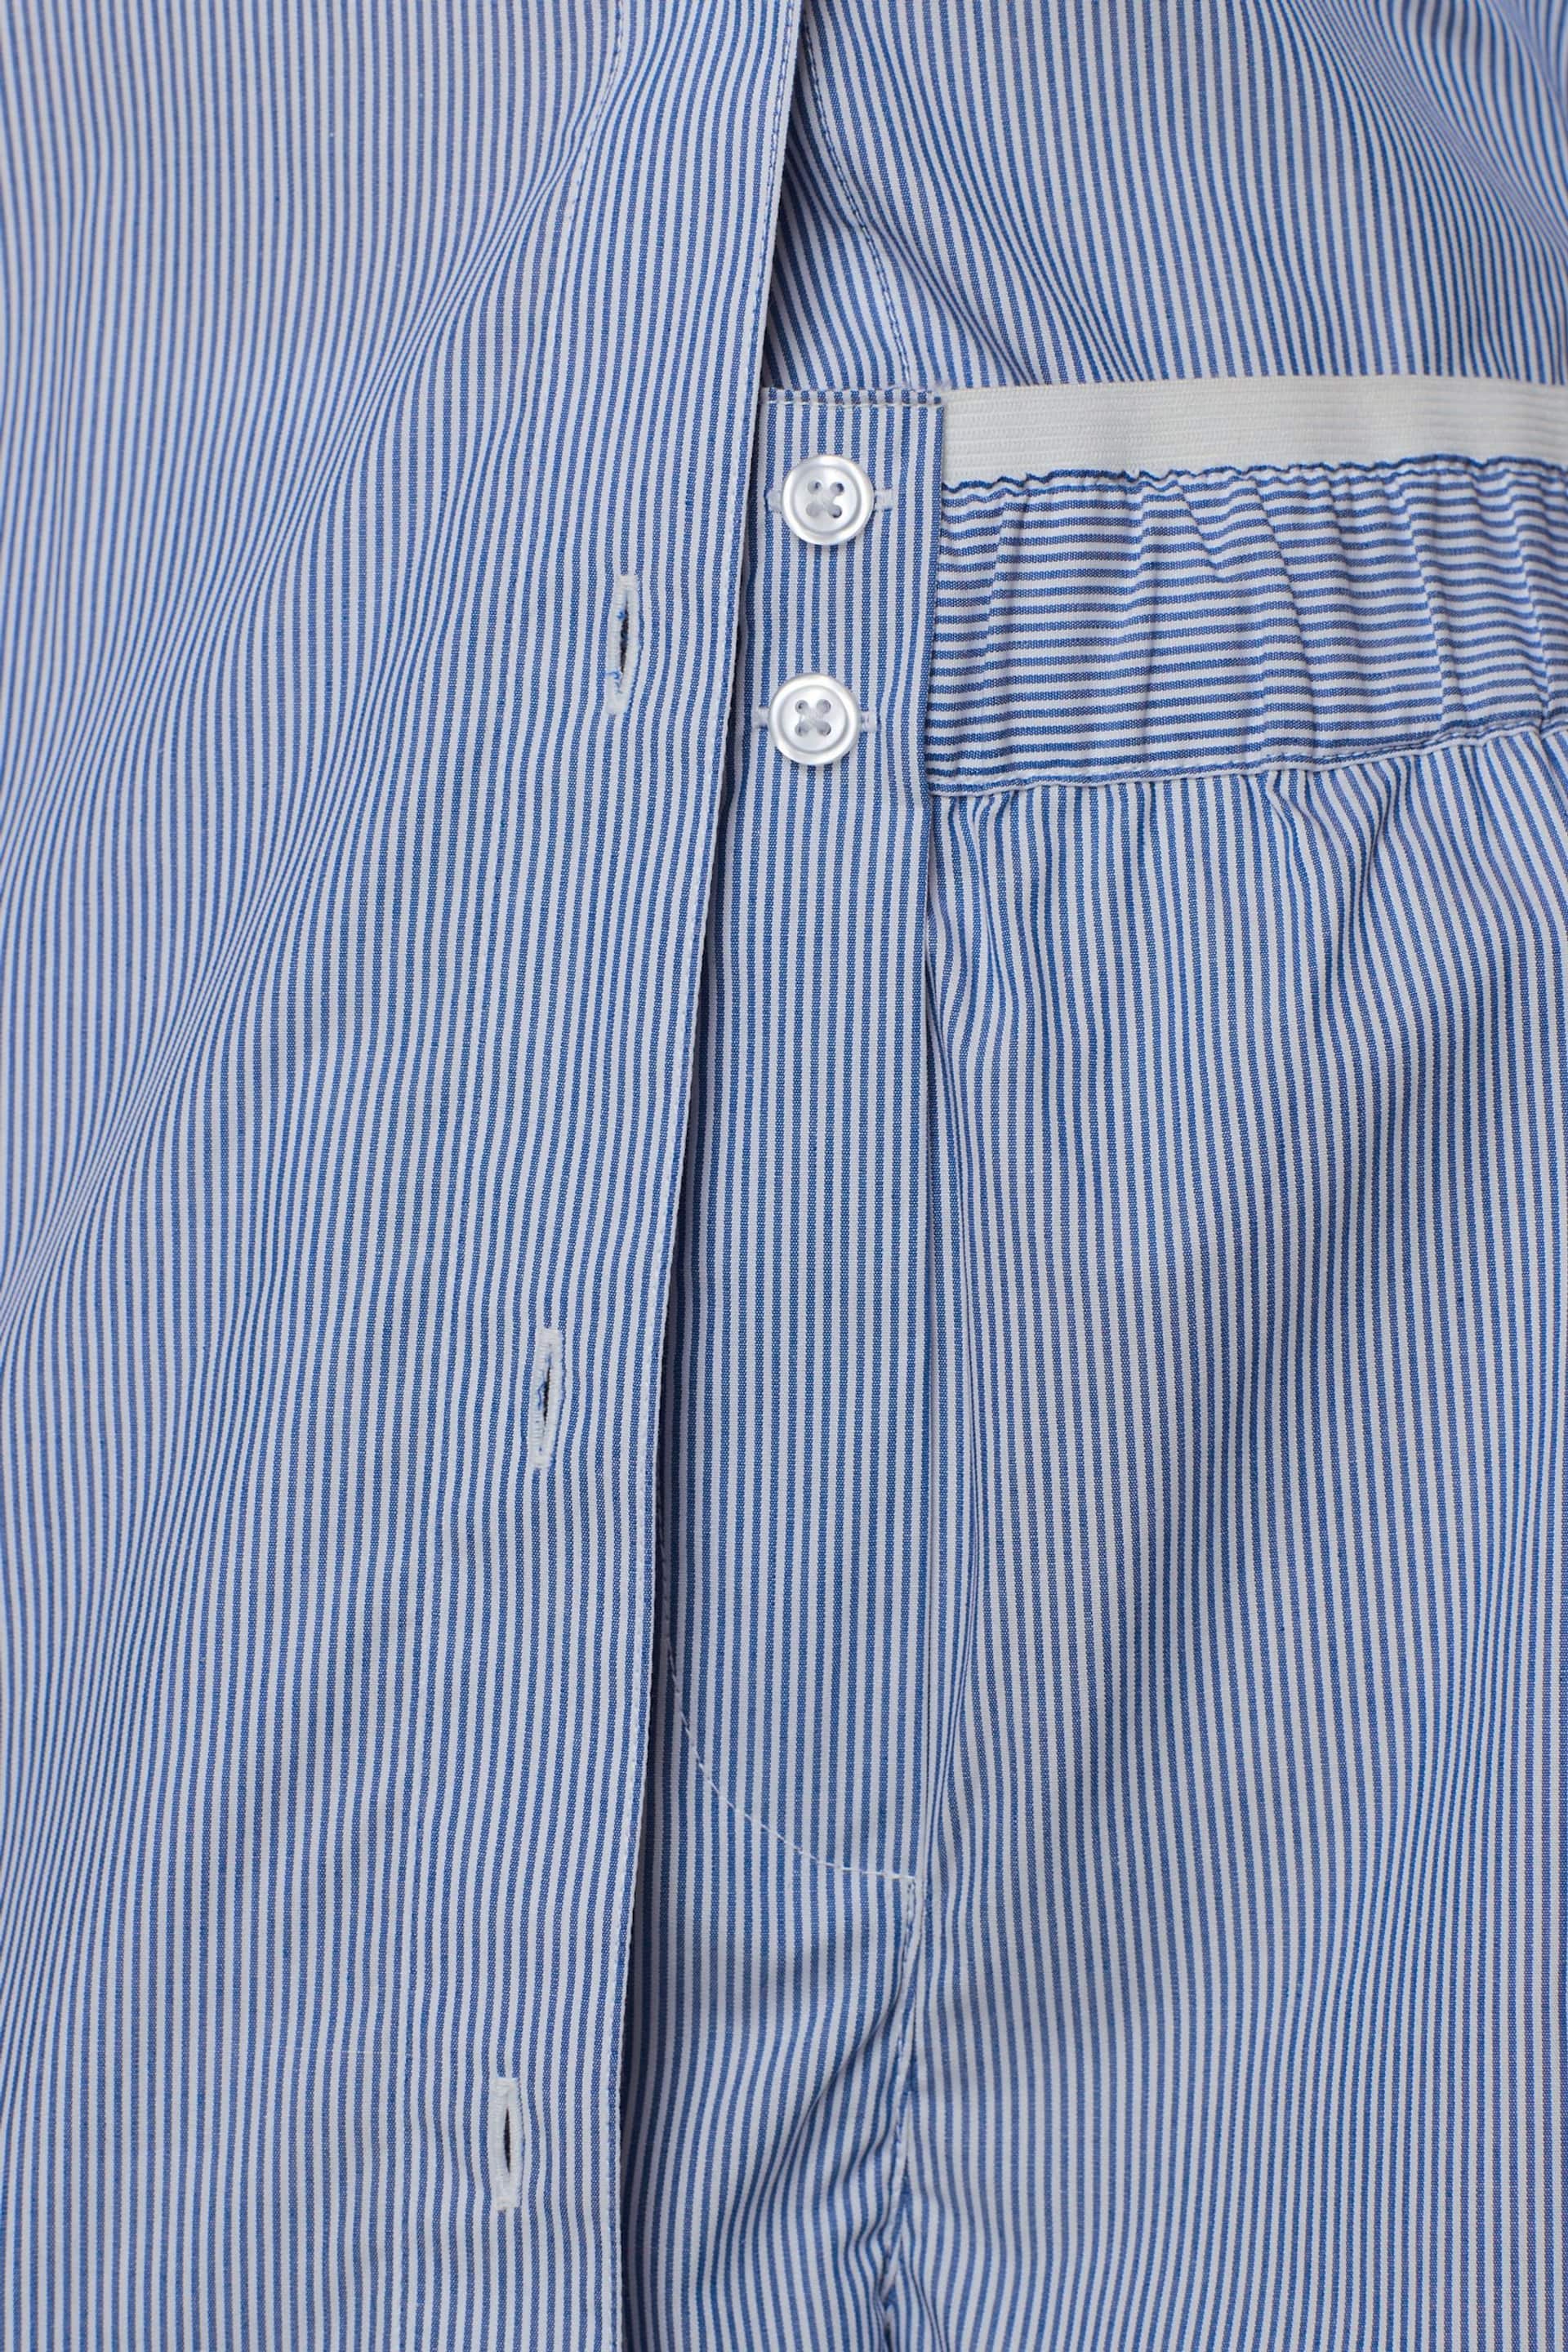 Blue/White Oversized Boy Striped Shorts - Image 5 of 5